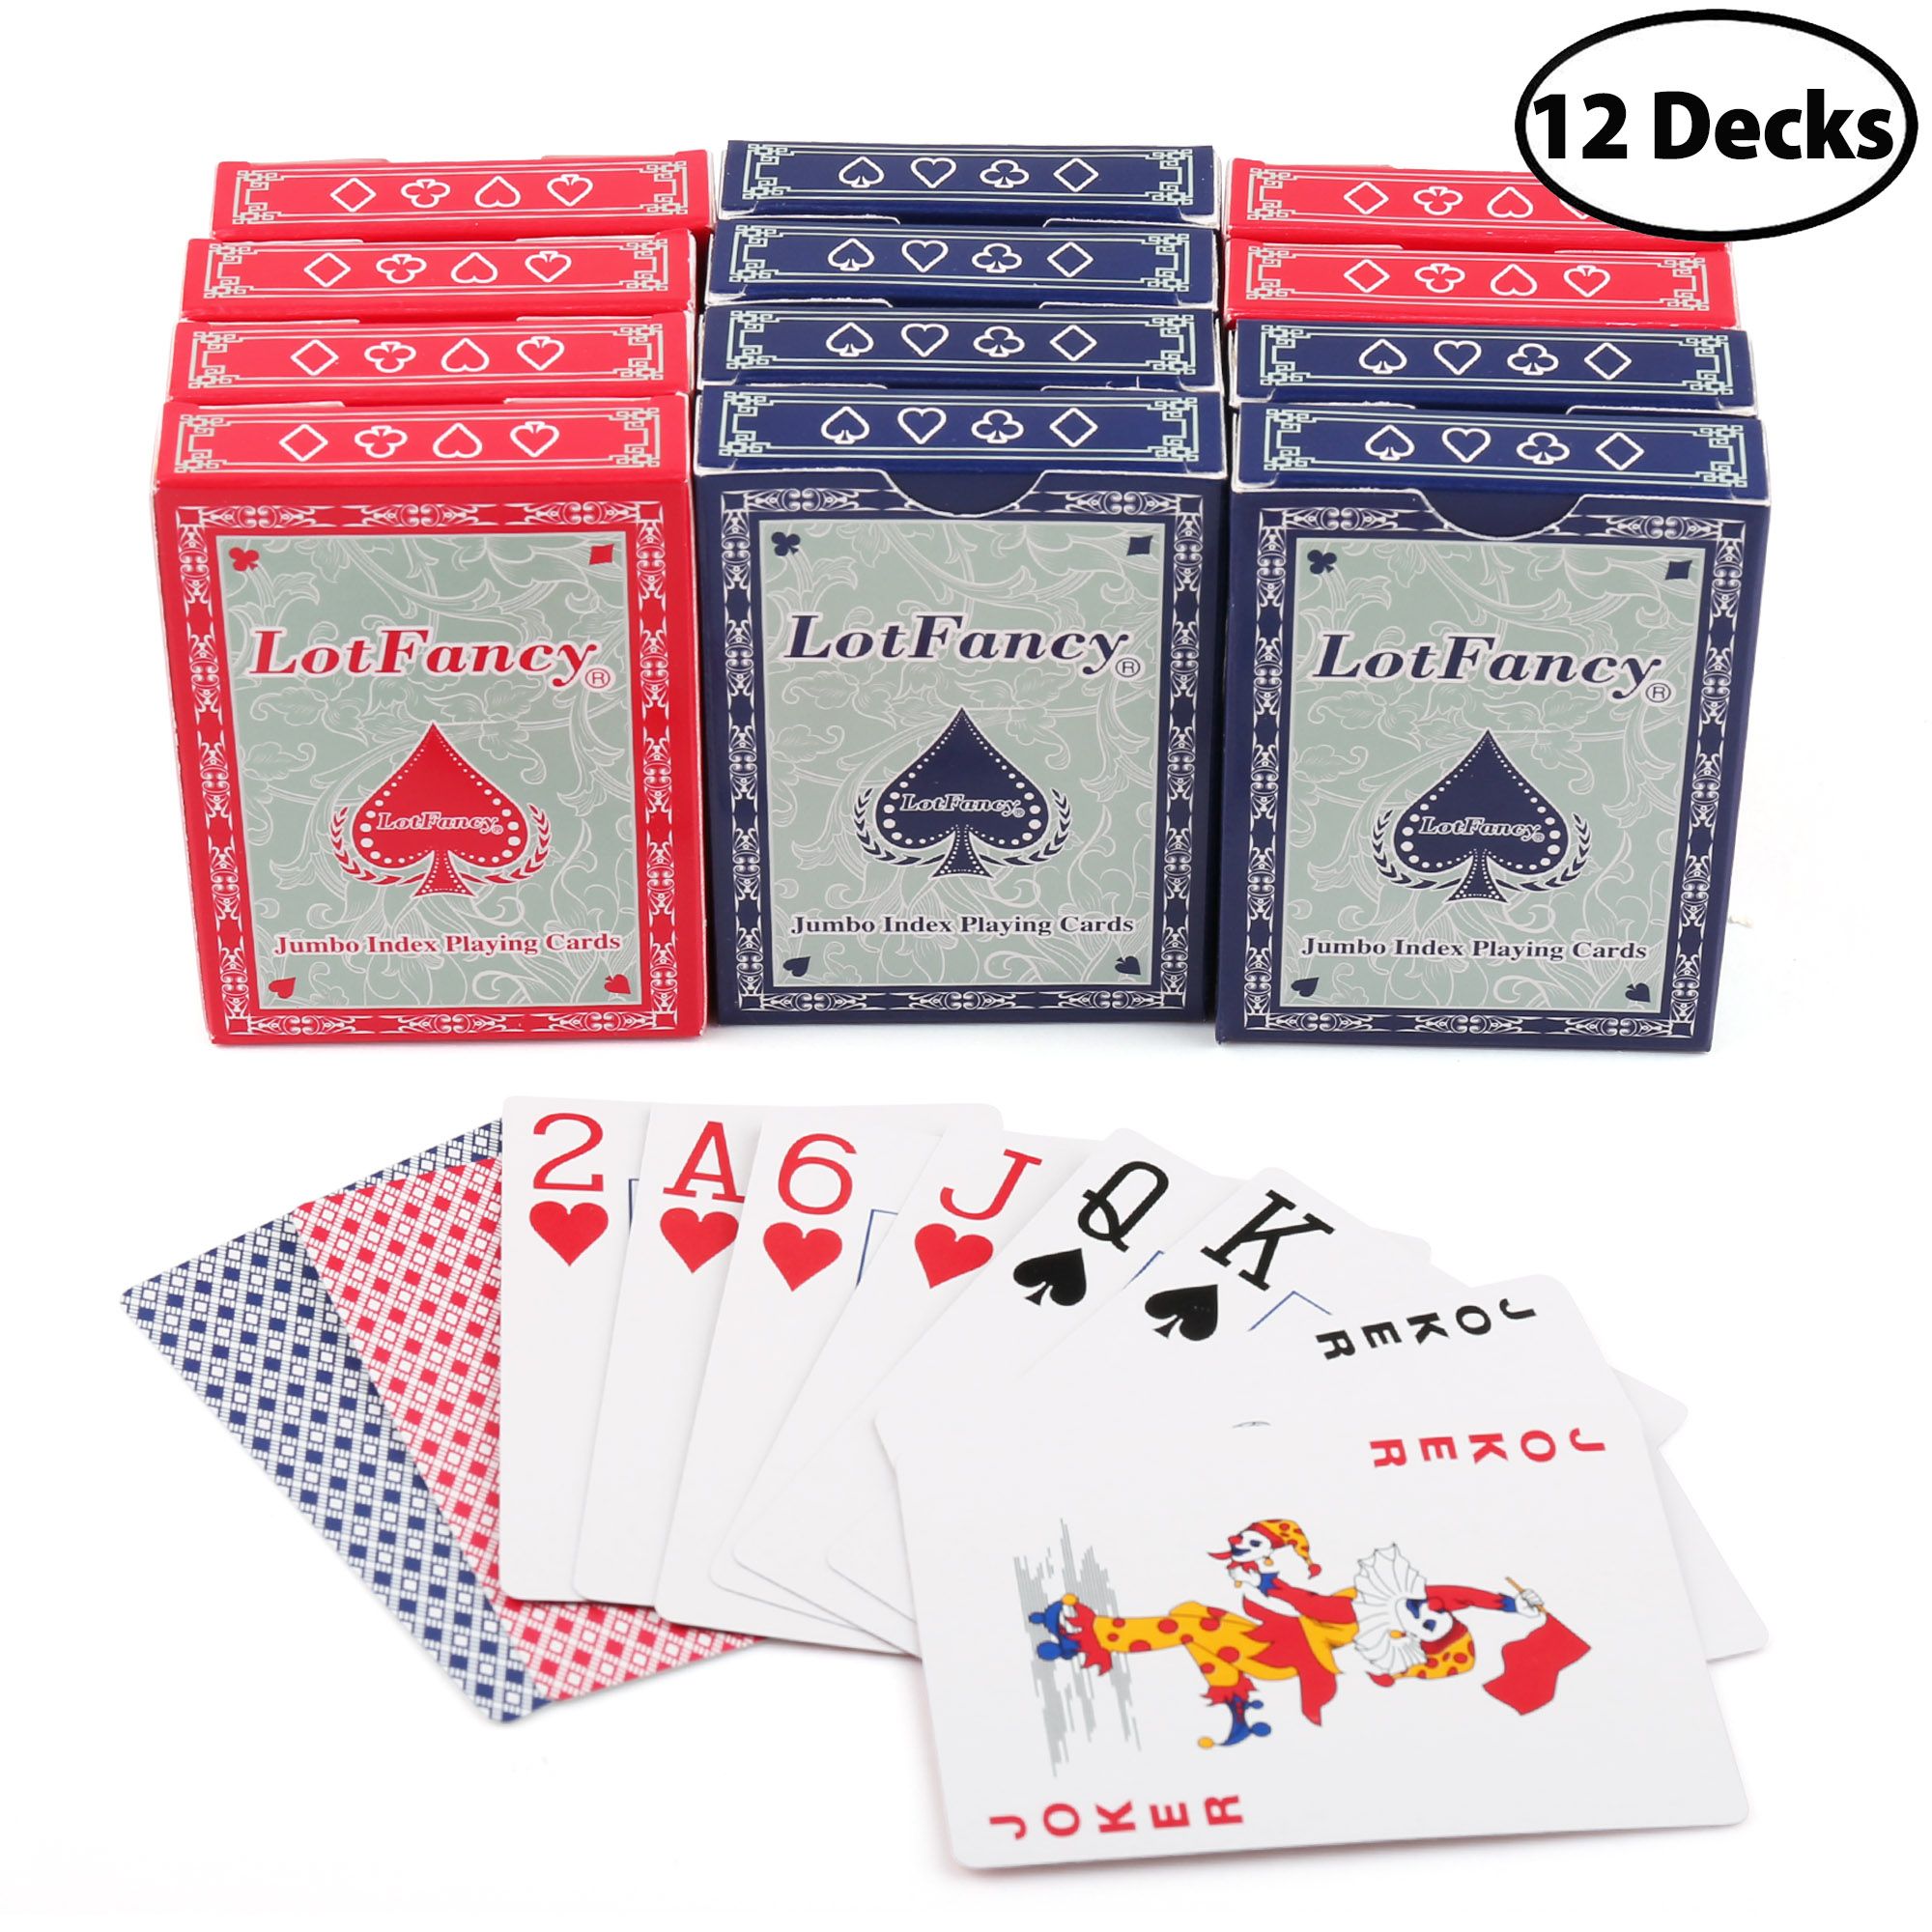 BEE Playing Cards 12 Decks 6 Blue Decks 6 Red Decks Brand New